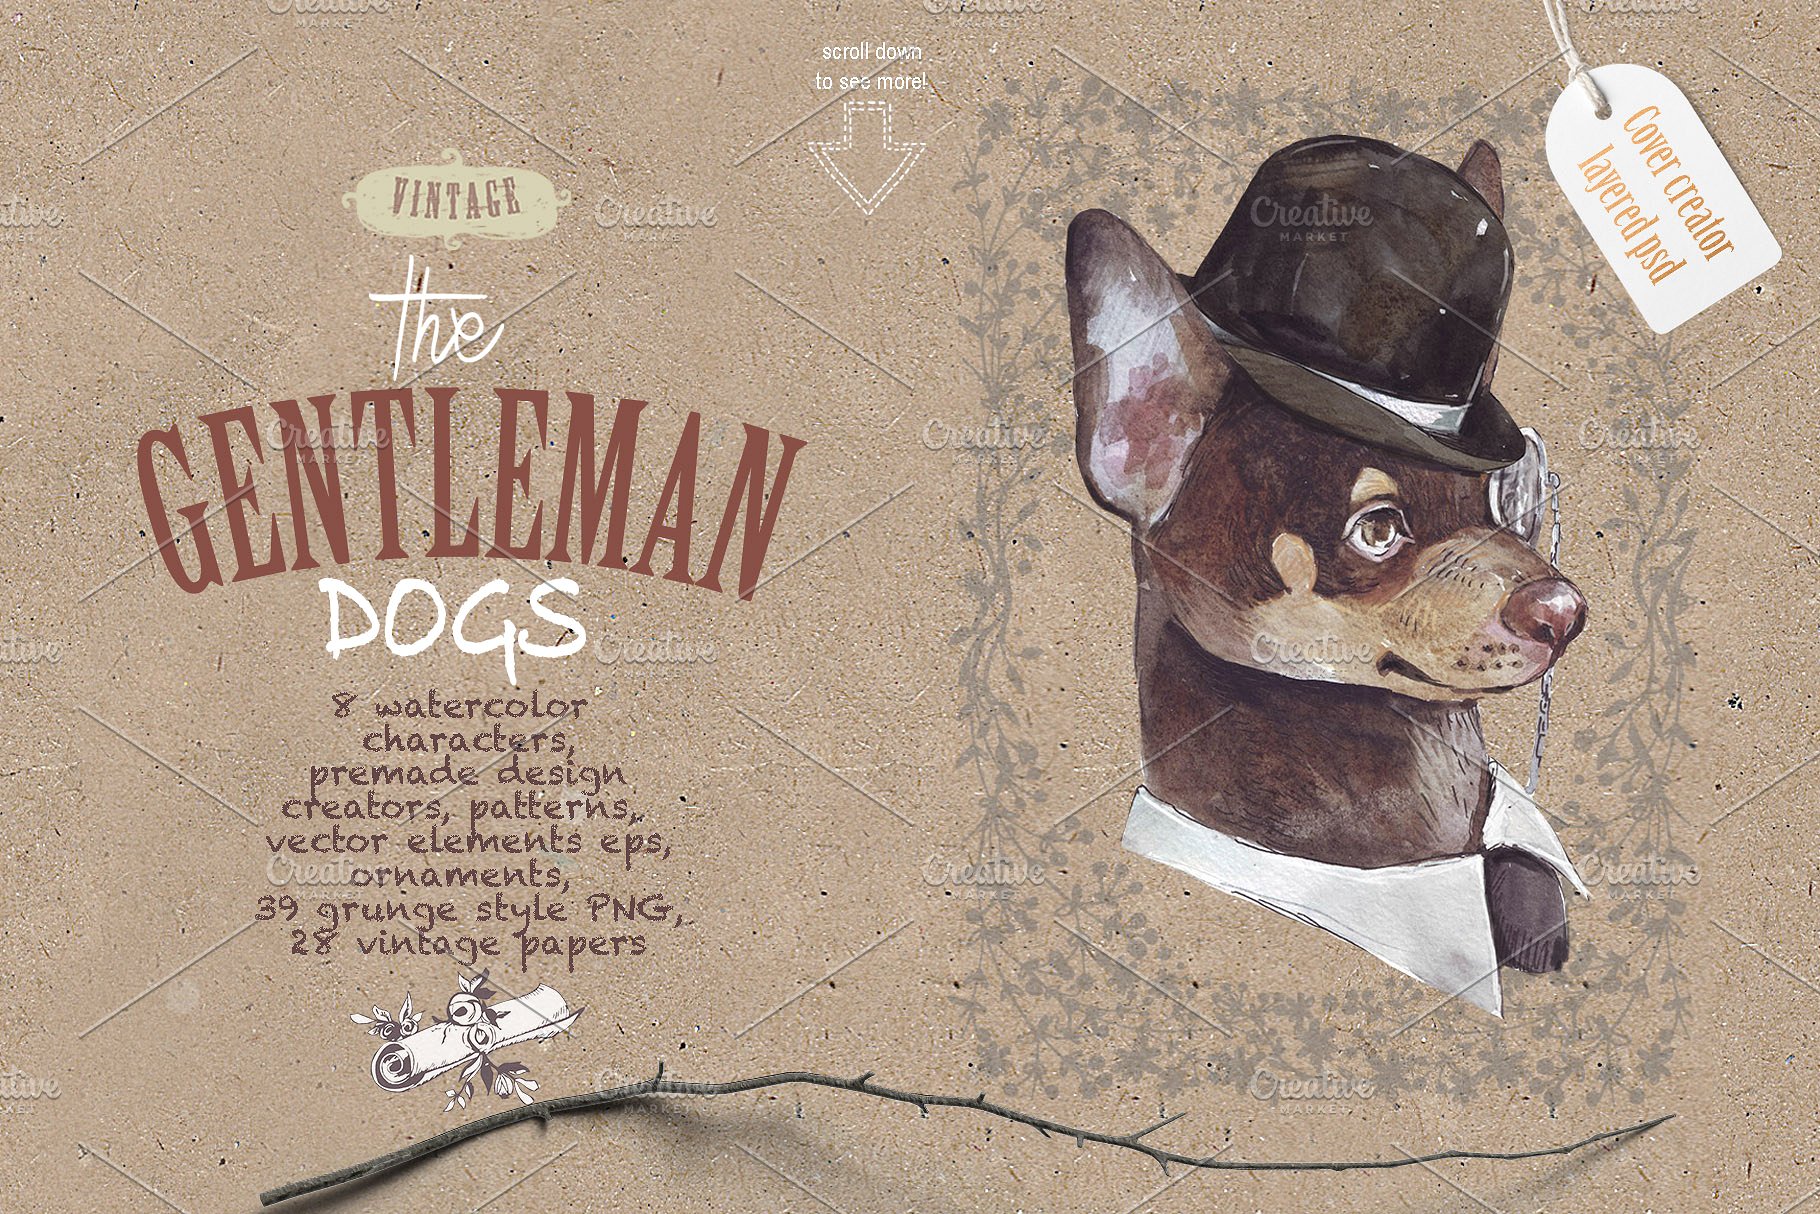 复古绅士小狗宠物形象设计素材包[1.21GB] GENTLEMAN DOGS SET插图(2)